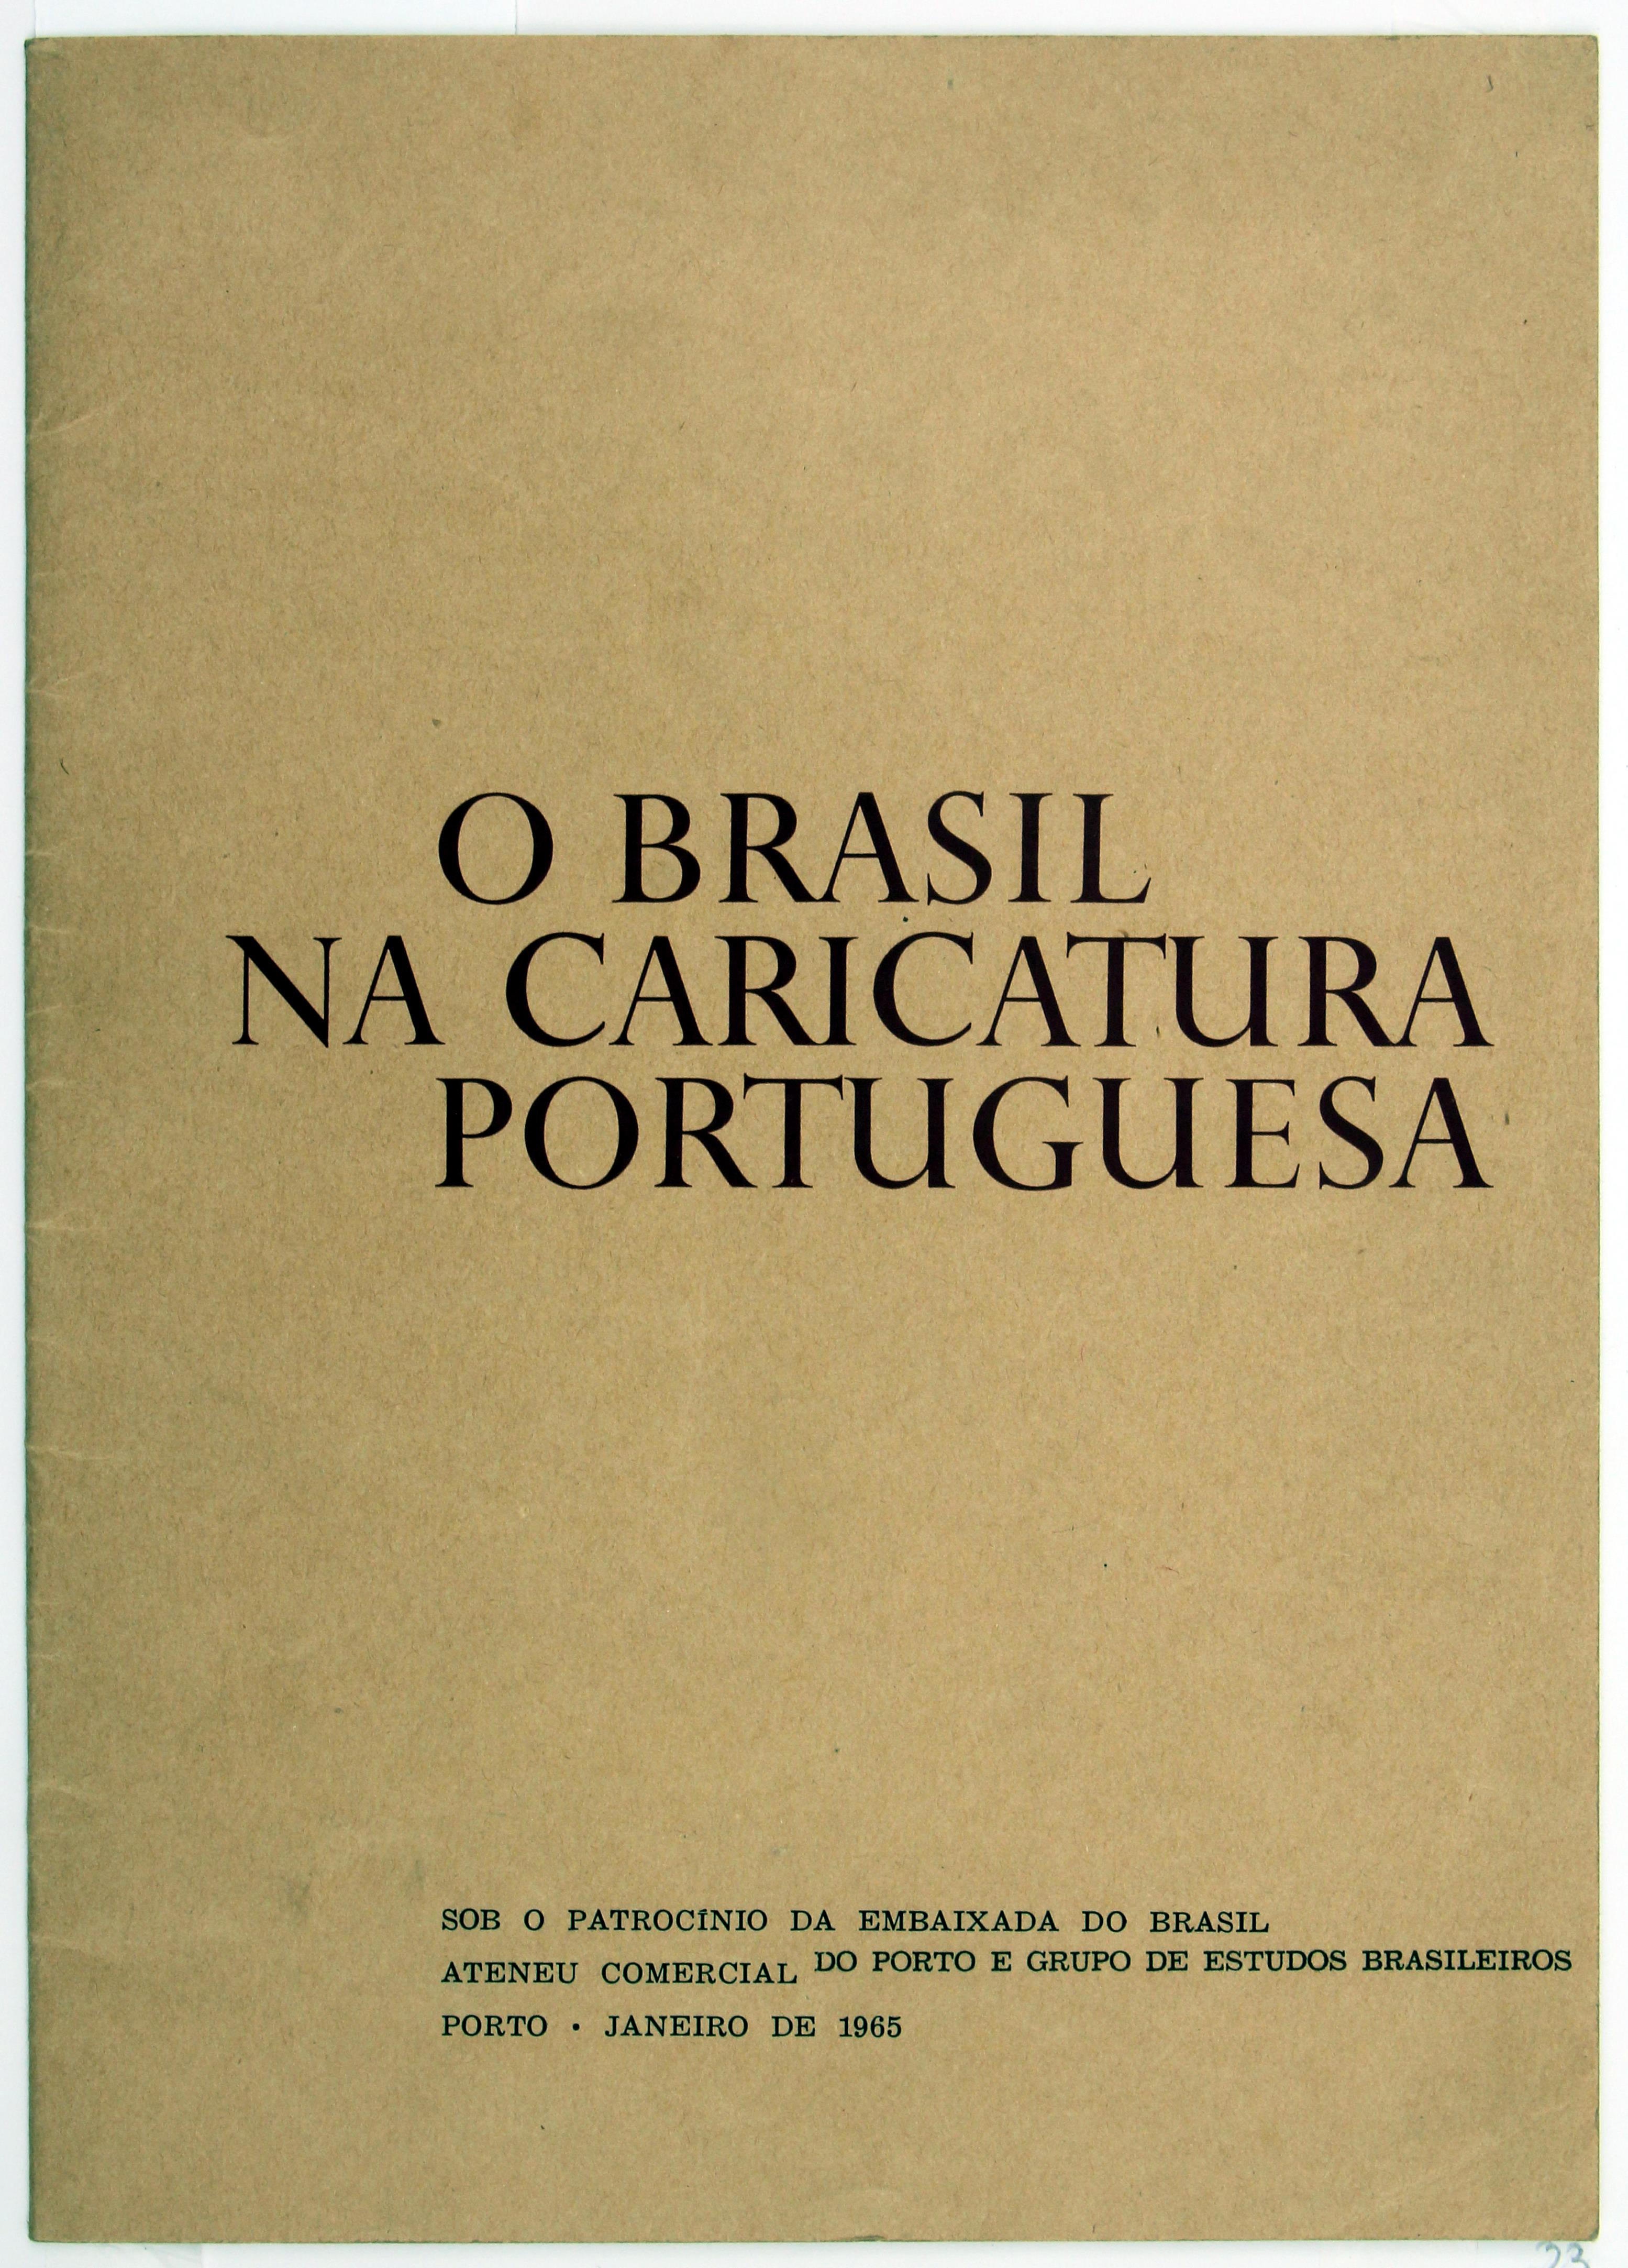 Cruz Caldas (4) : 1966 - 2009 : o Brasil na caricatura portuguesa : catálogo